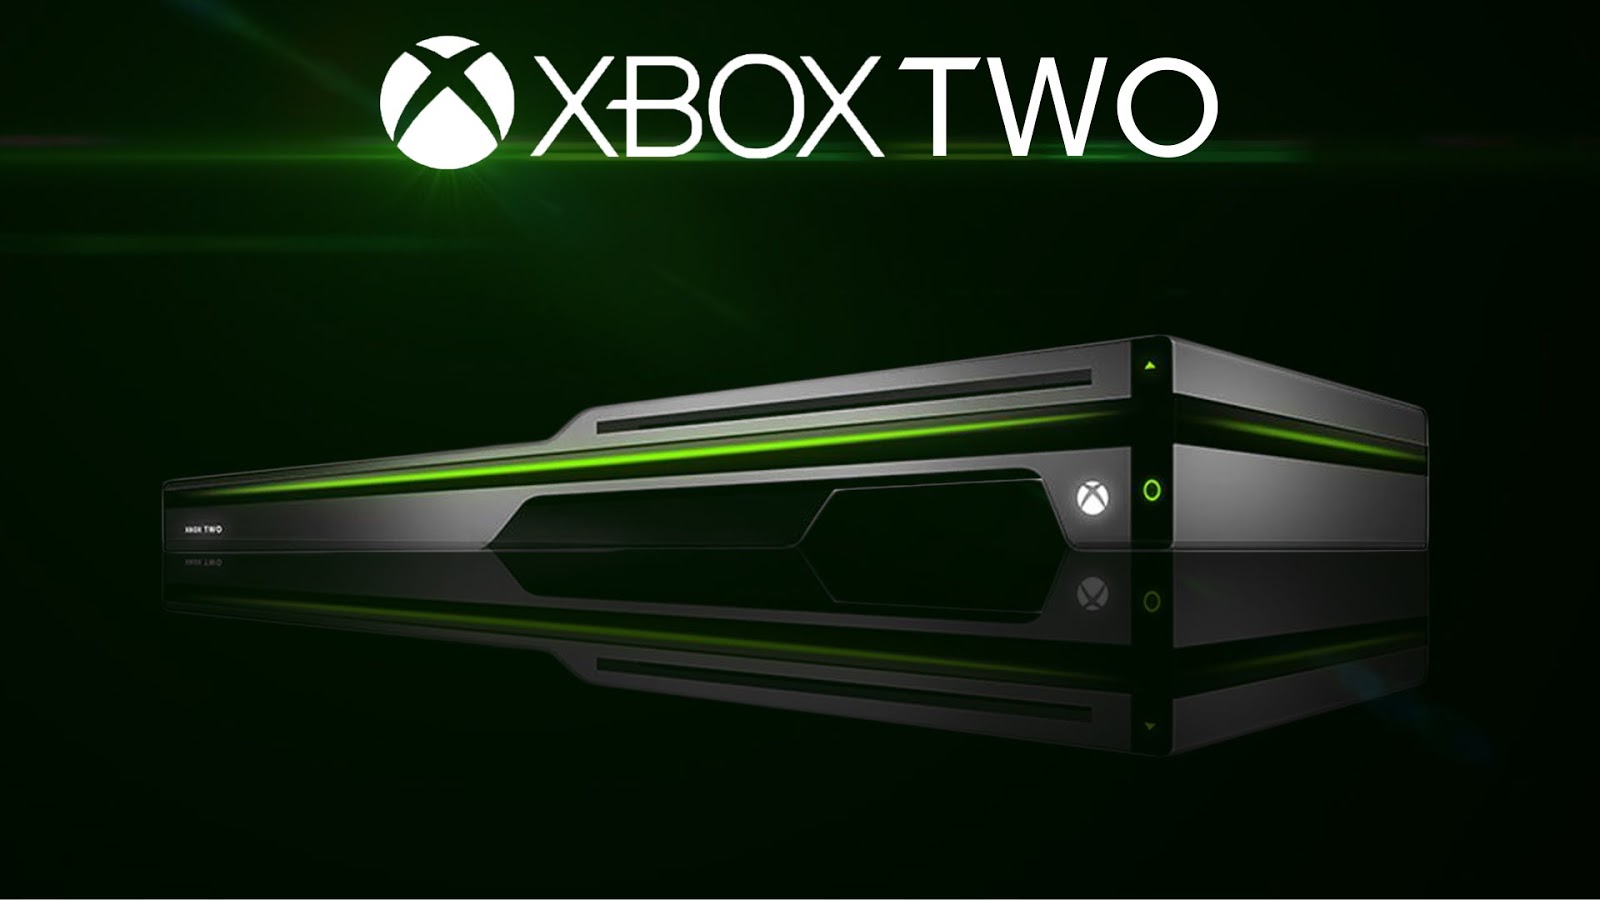 Xbox 360 дата выхода. Хбокс оне 2021. Хбокс 2. Xbox two и ps5. Xbox 2021.